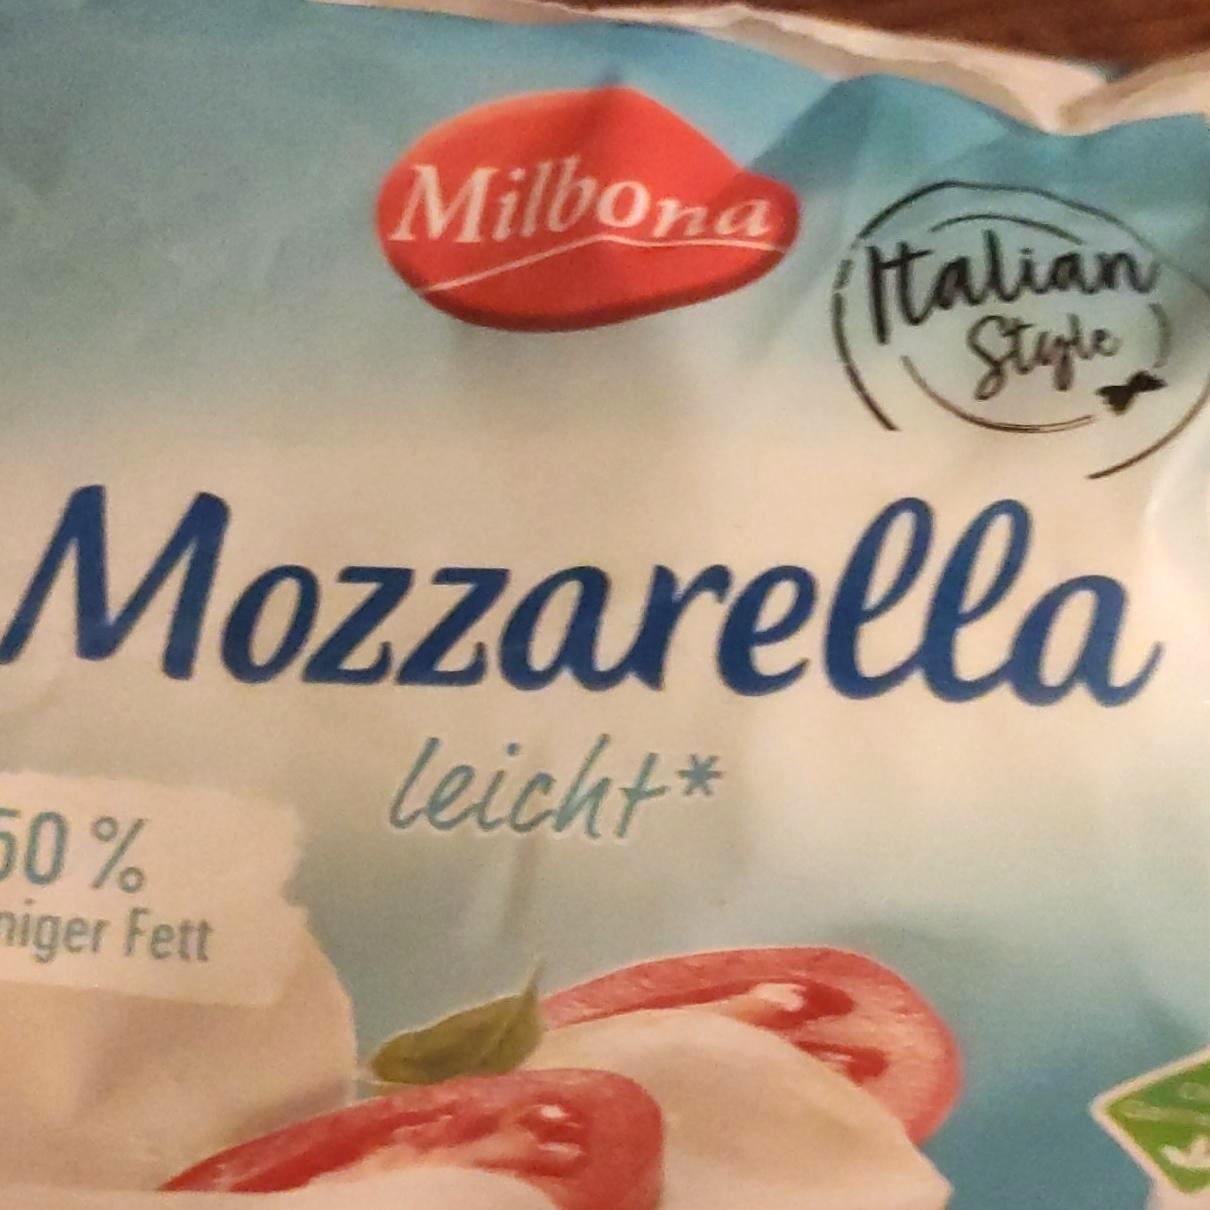 Képek - Mozzarella light Milbona